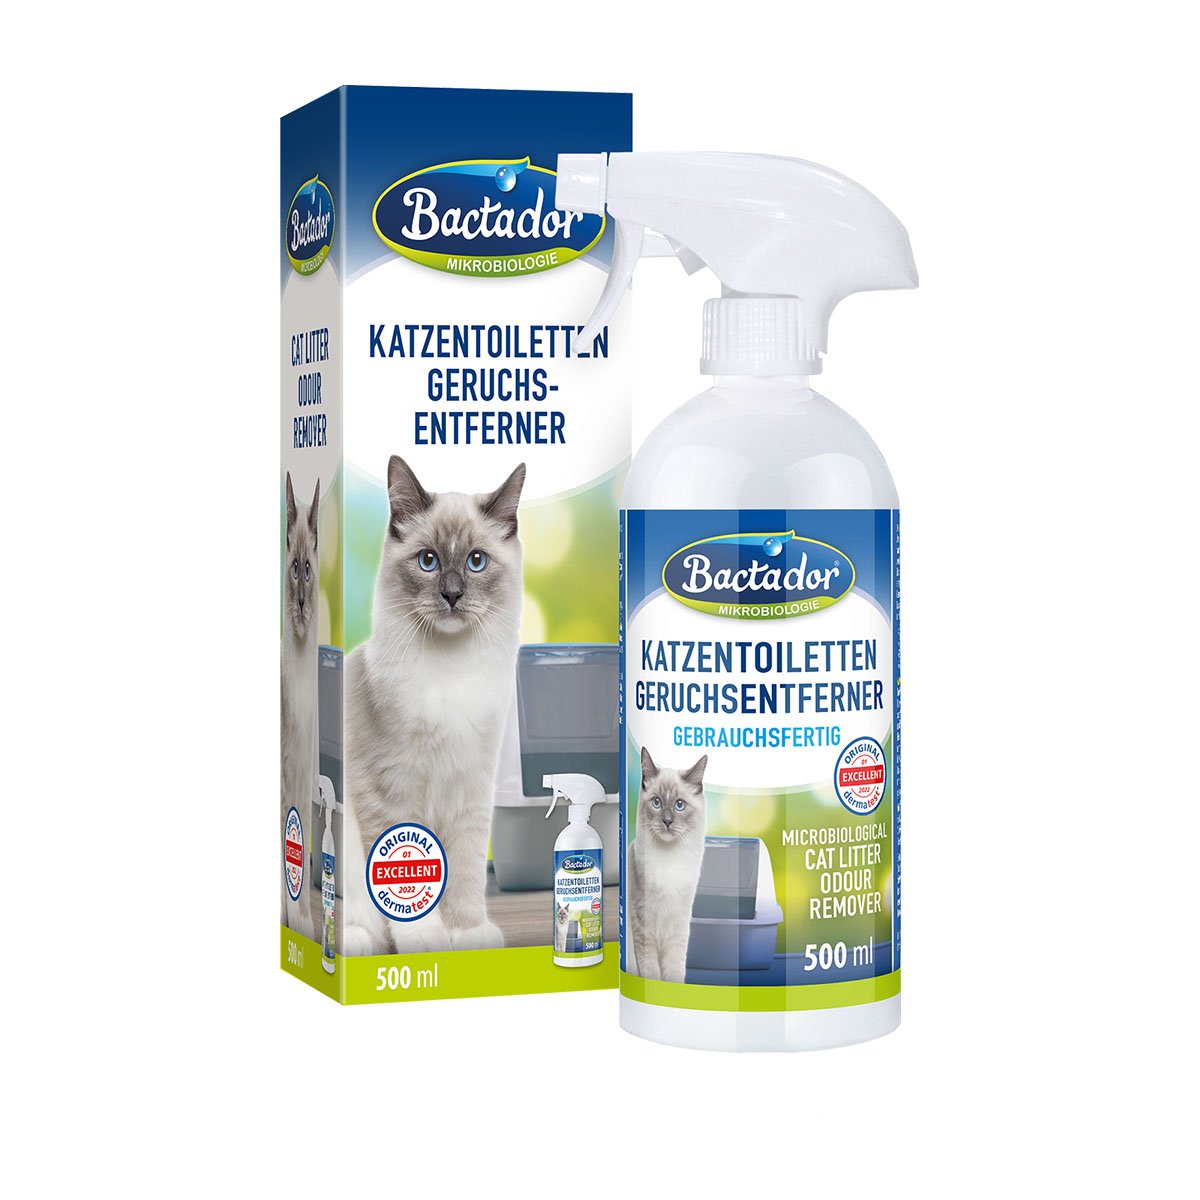 Bactador Katzentoiletten – Geruchsentferner Spray 500ml